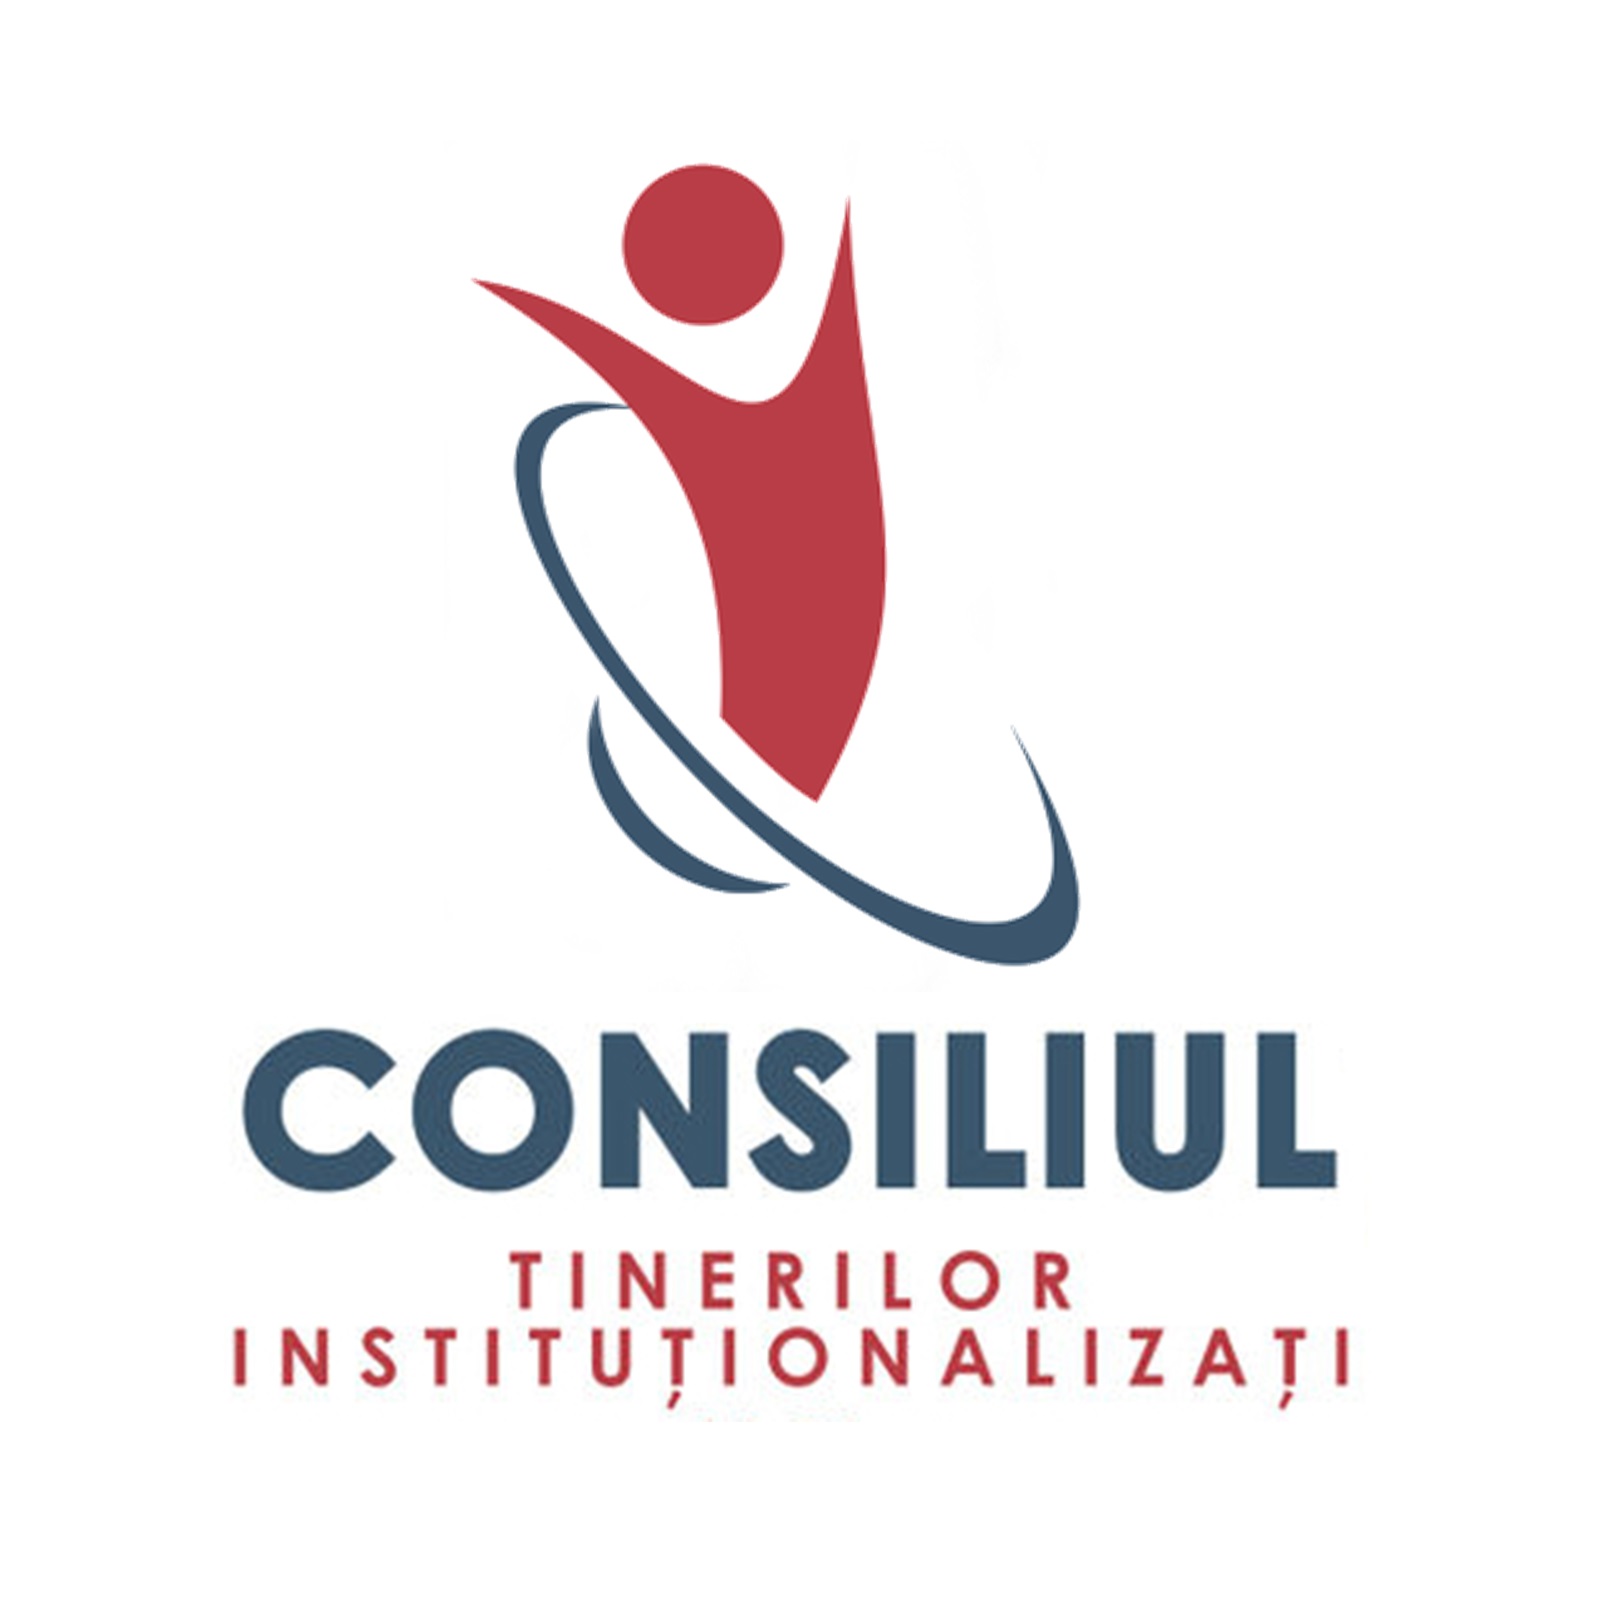 consiliul tinerilor institutionalizati logo